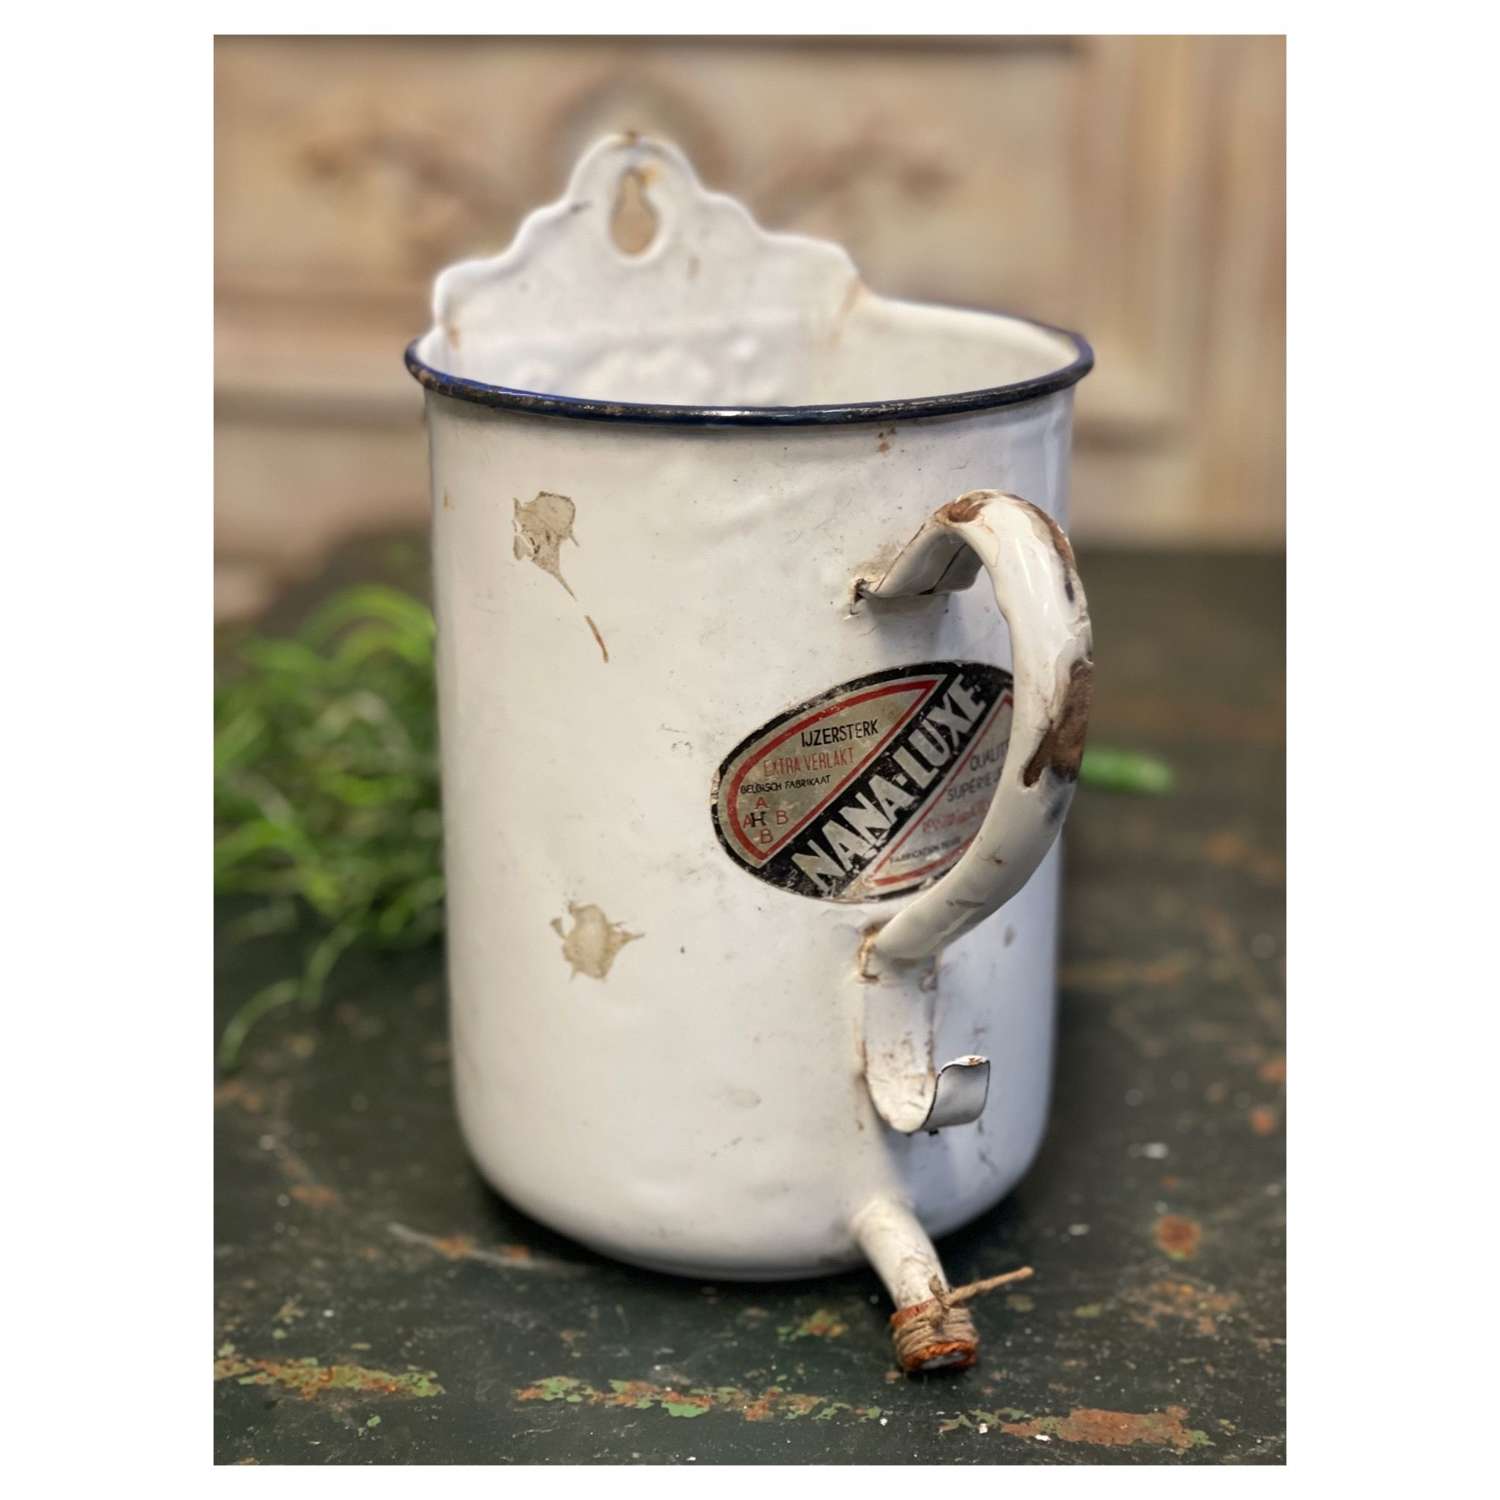 Vintage French irrigation jug